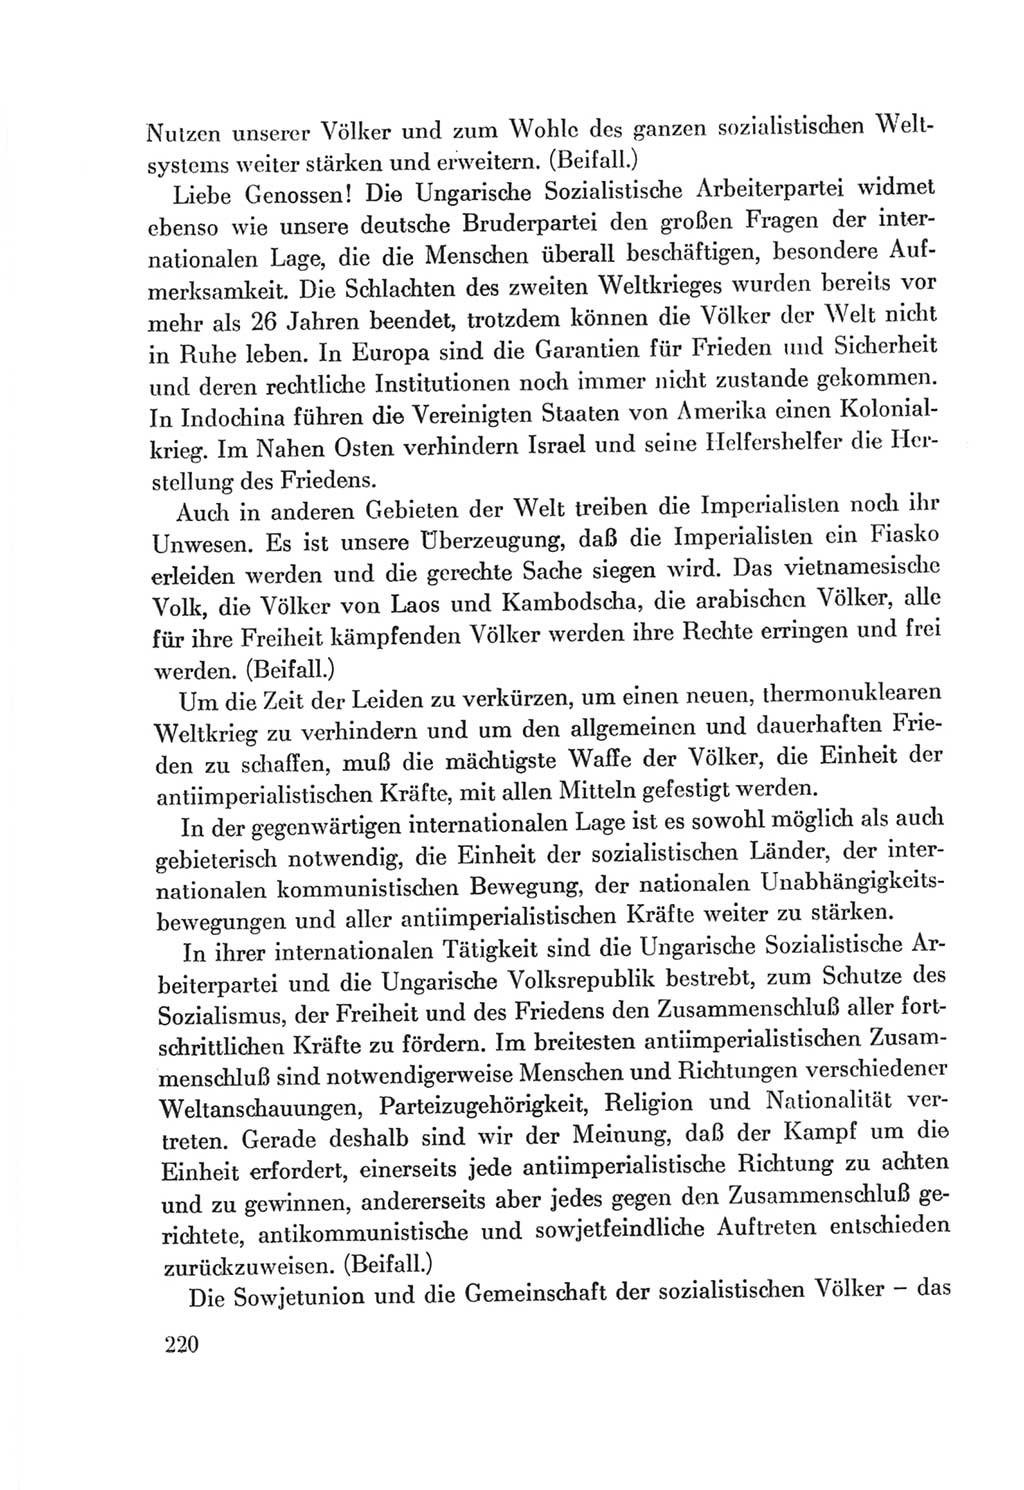 Protokoll der Verhandlungen des Ⅷ. Parteitages der Sozialistischen Einheitspartei Deutschlands (SED) [Deutsche Demokratische Republik (DDR)] 1971, Band 1, Seite 220 (Prot. Verh. Ⅷ. PT SED DDR 1971, Bd. 1, S. 220)